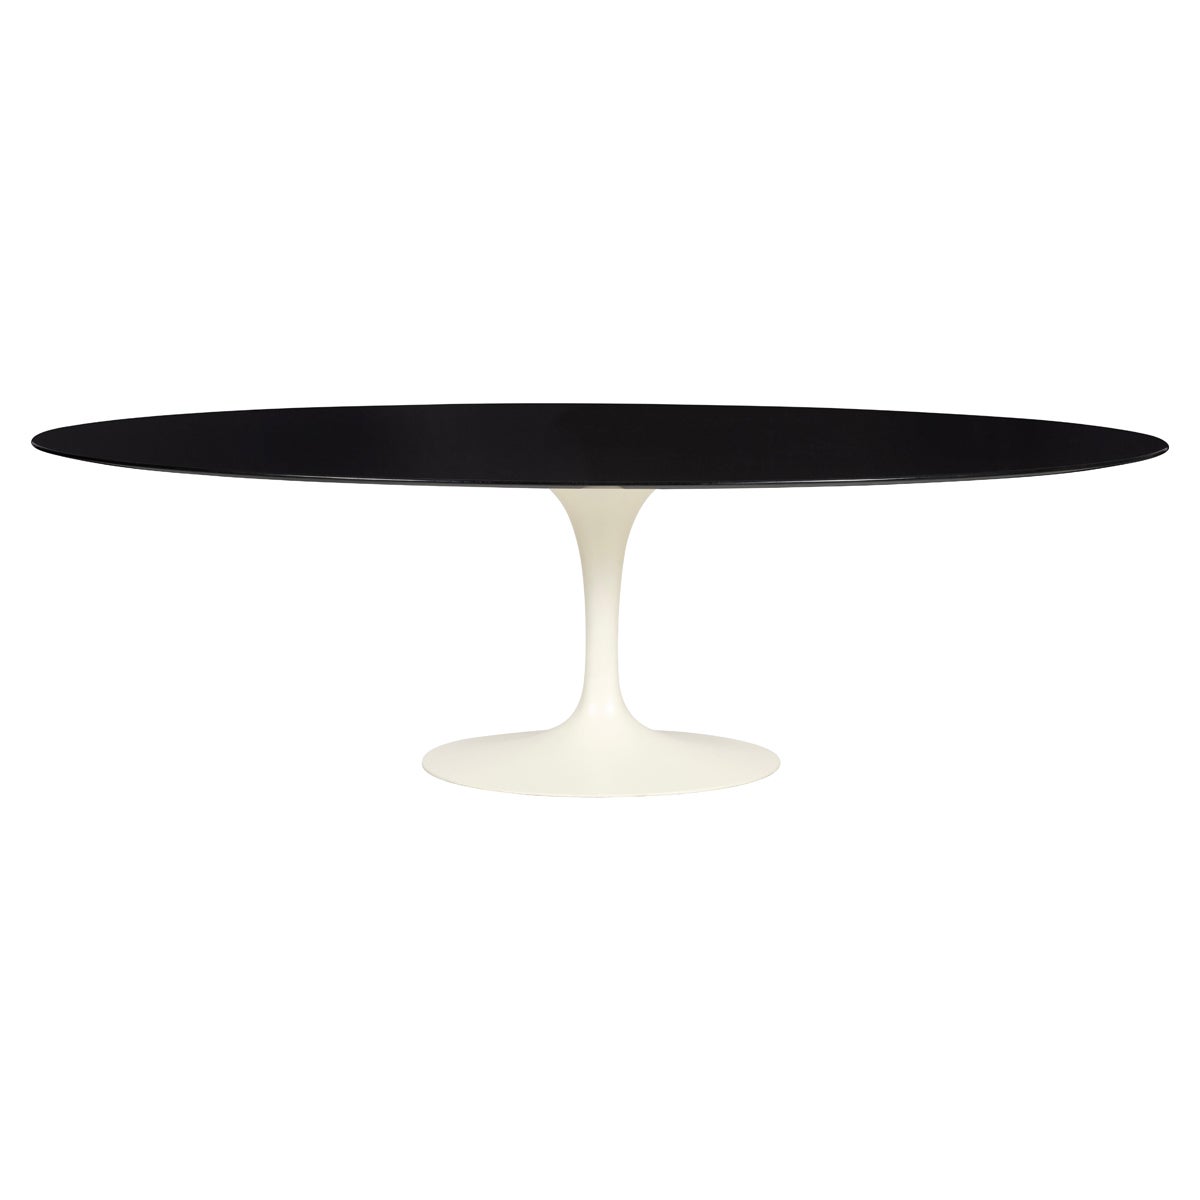 How tall is an Eero Saarinen table?